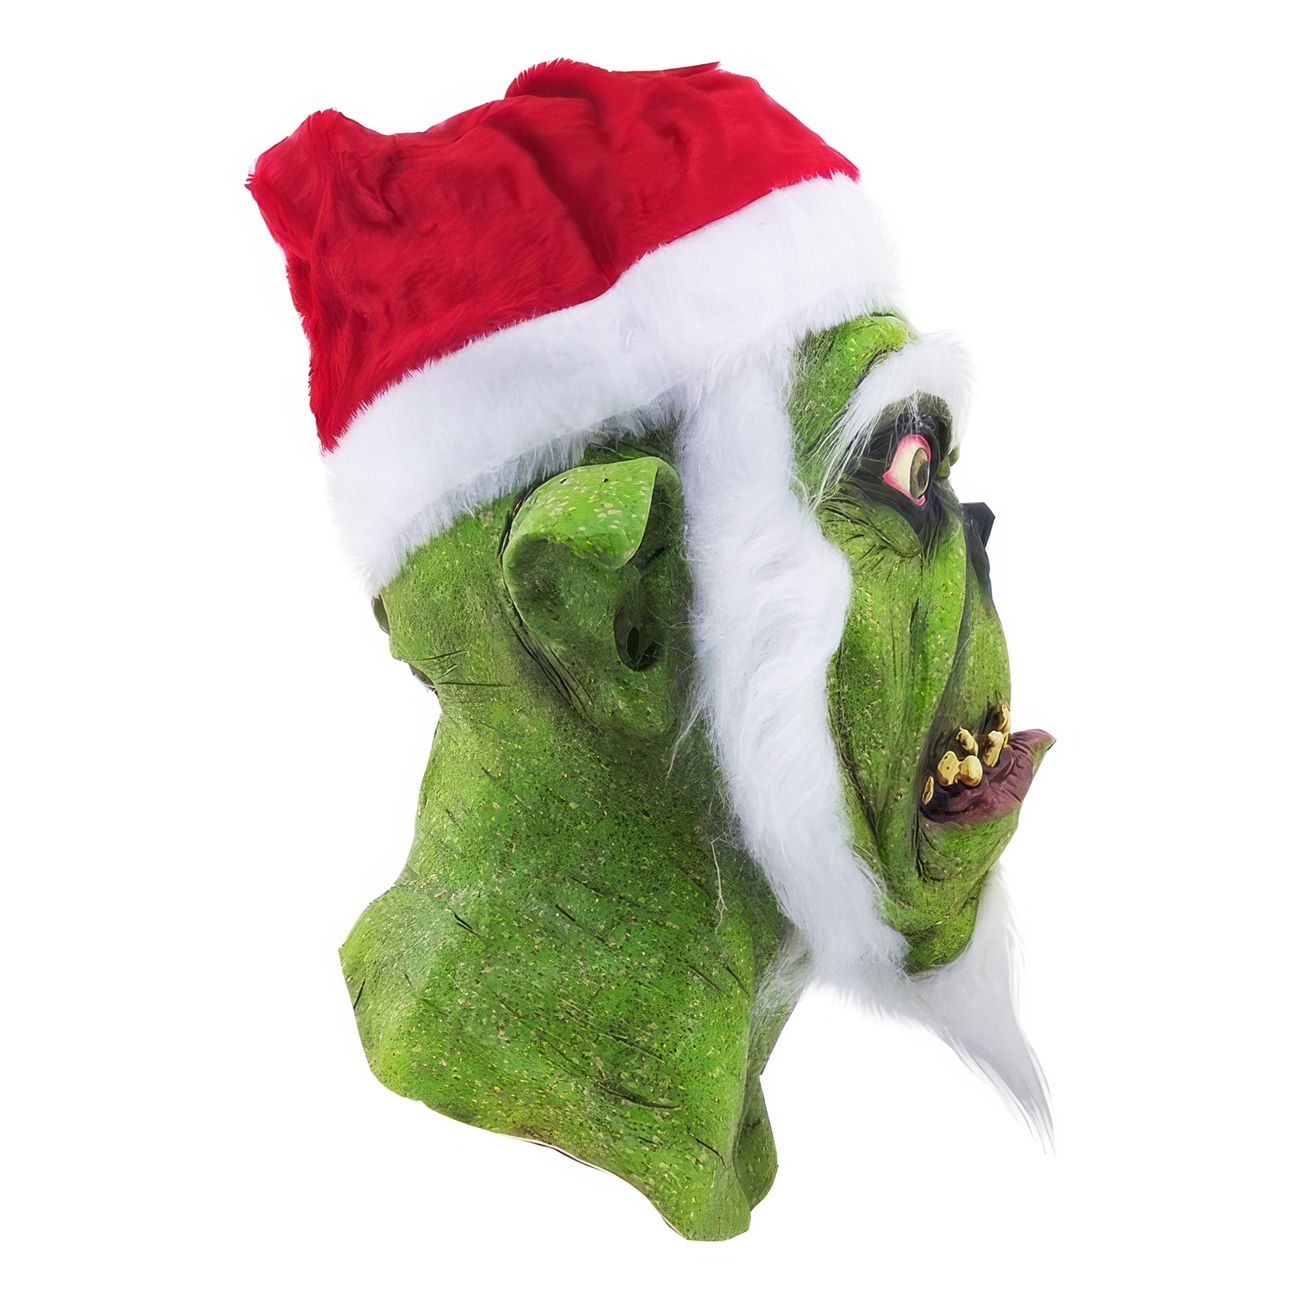 ghoulish-green-santa-mask-97061-4